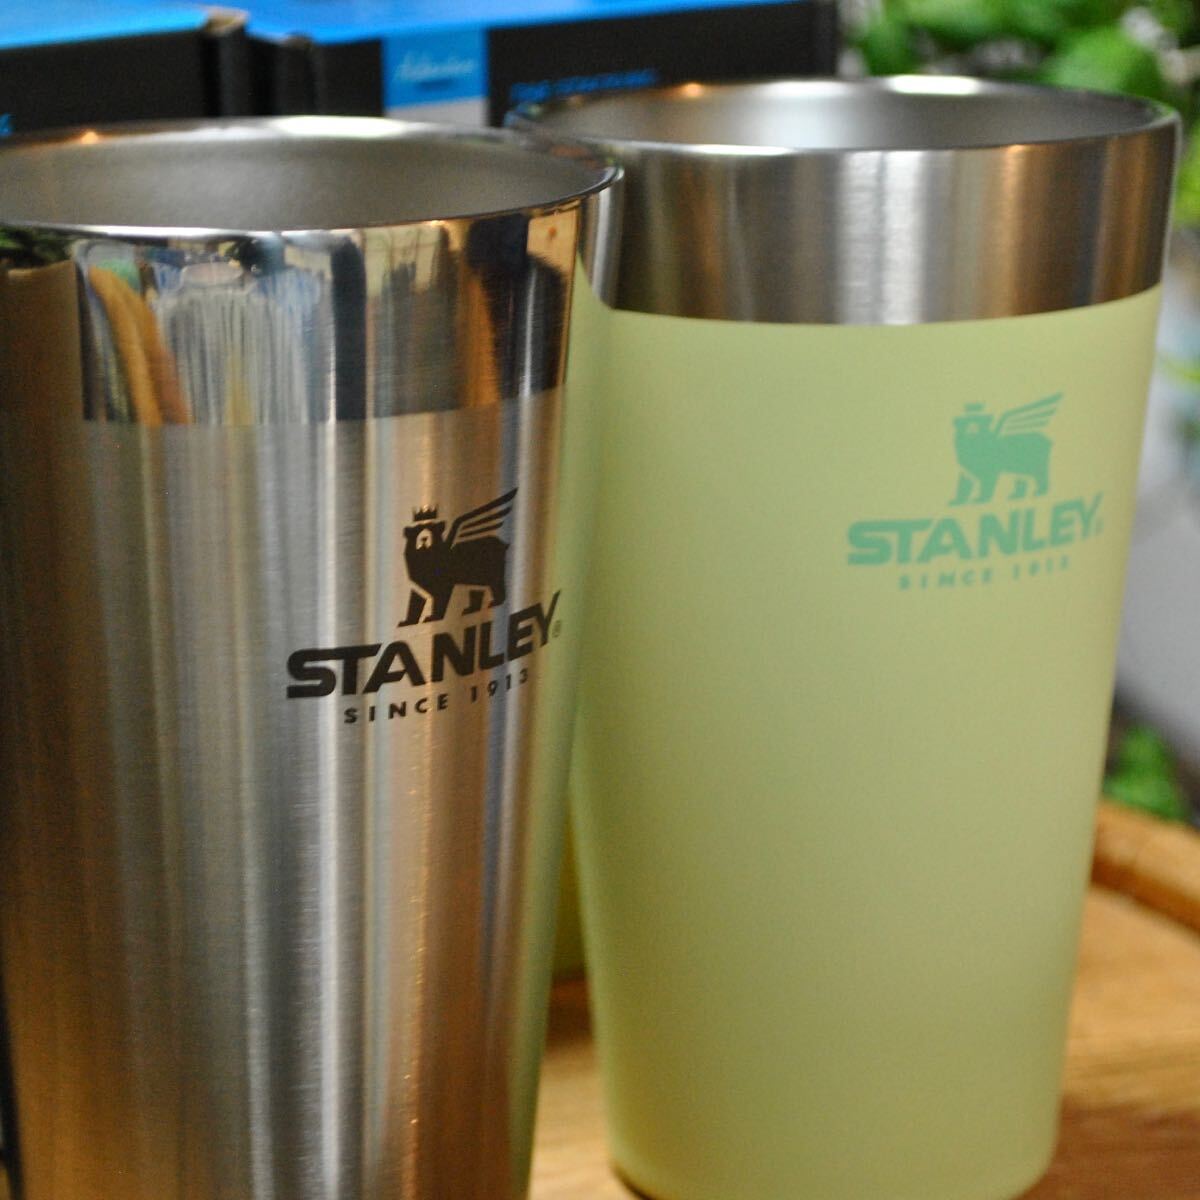  Stanley STANLEY старт  King вакуум сосна to2 -цветный набор [ серебряный & citron yellow ] стандартный товар вакуум изоляция высокий стакан пара уличный 